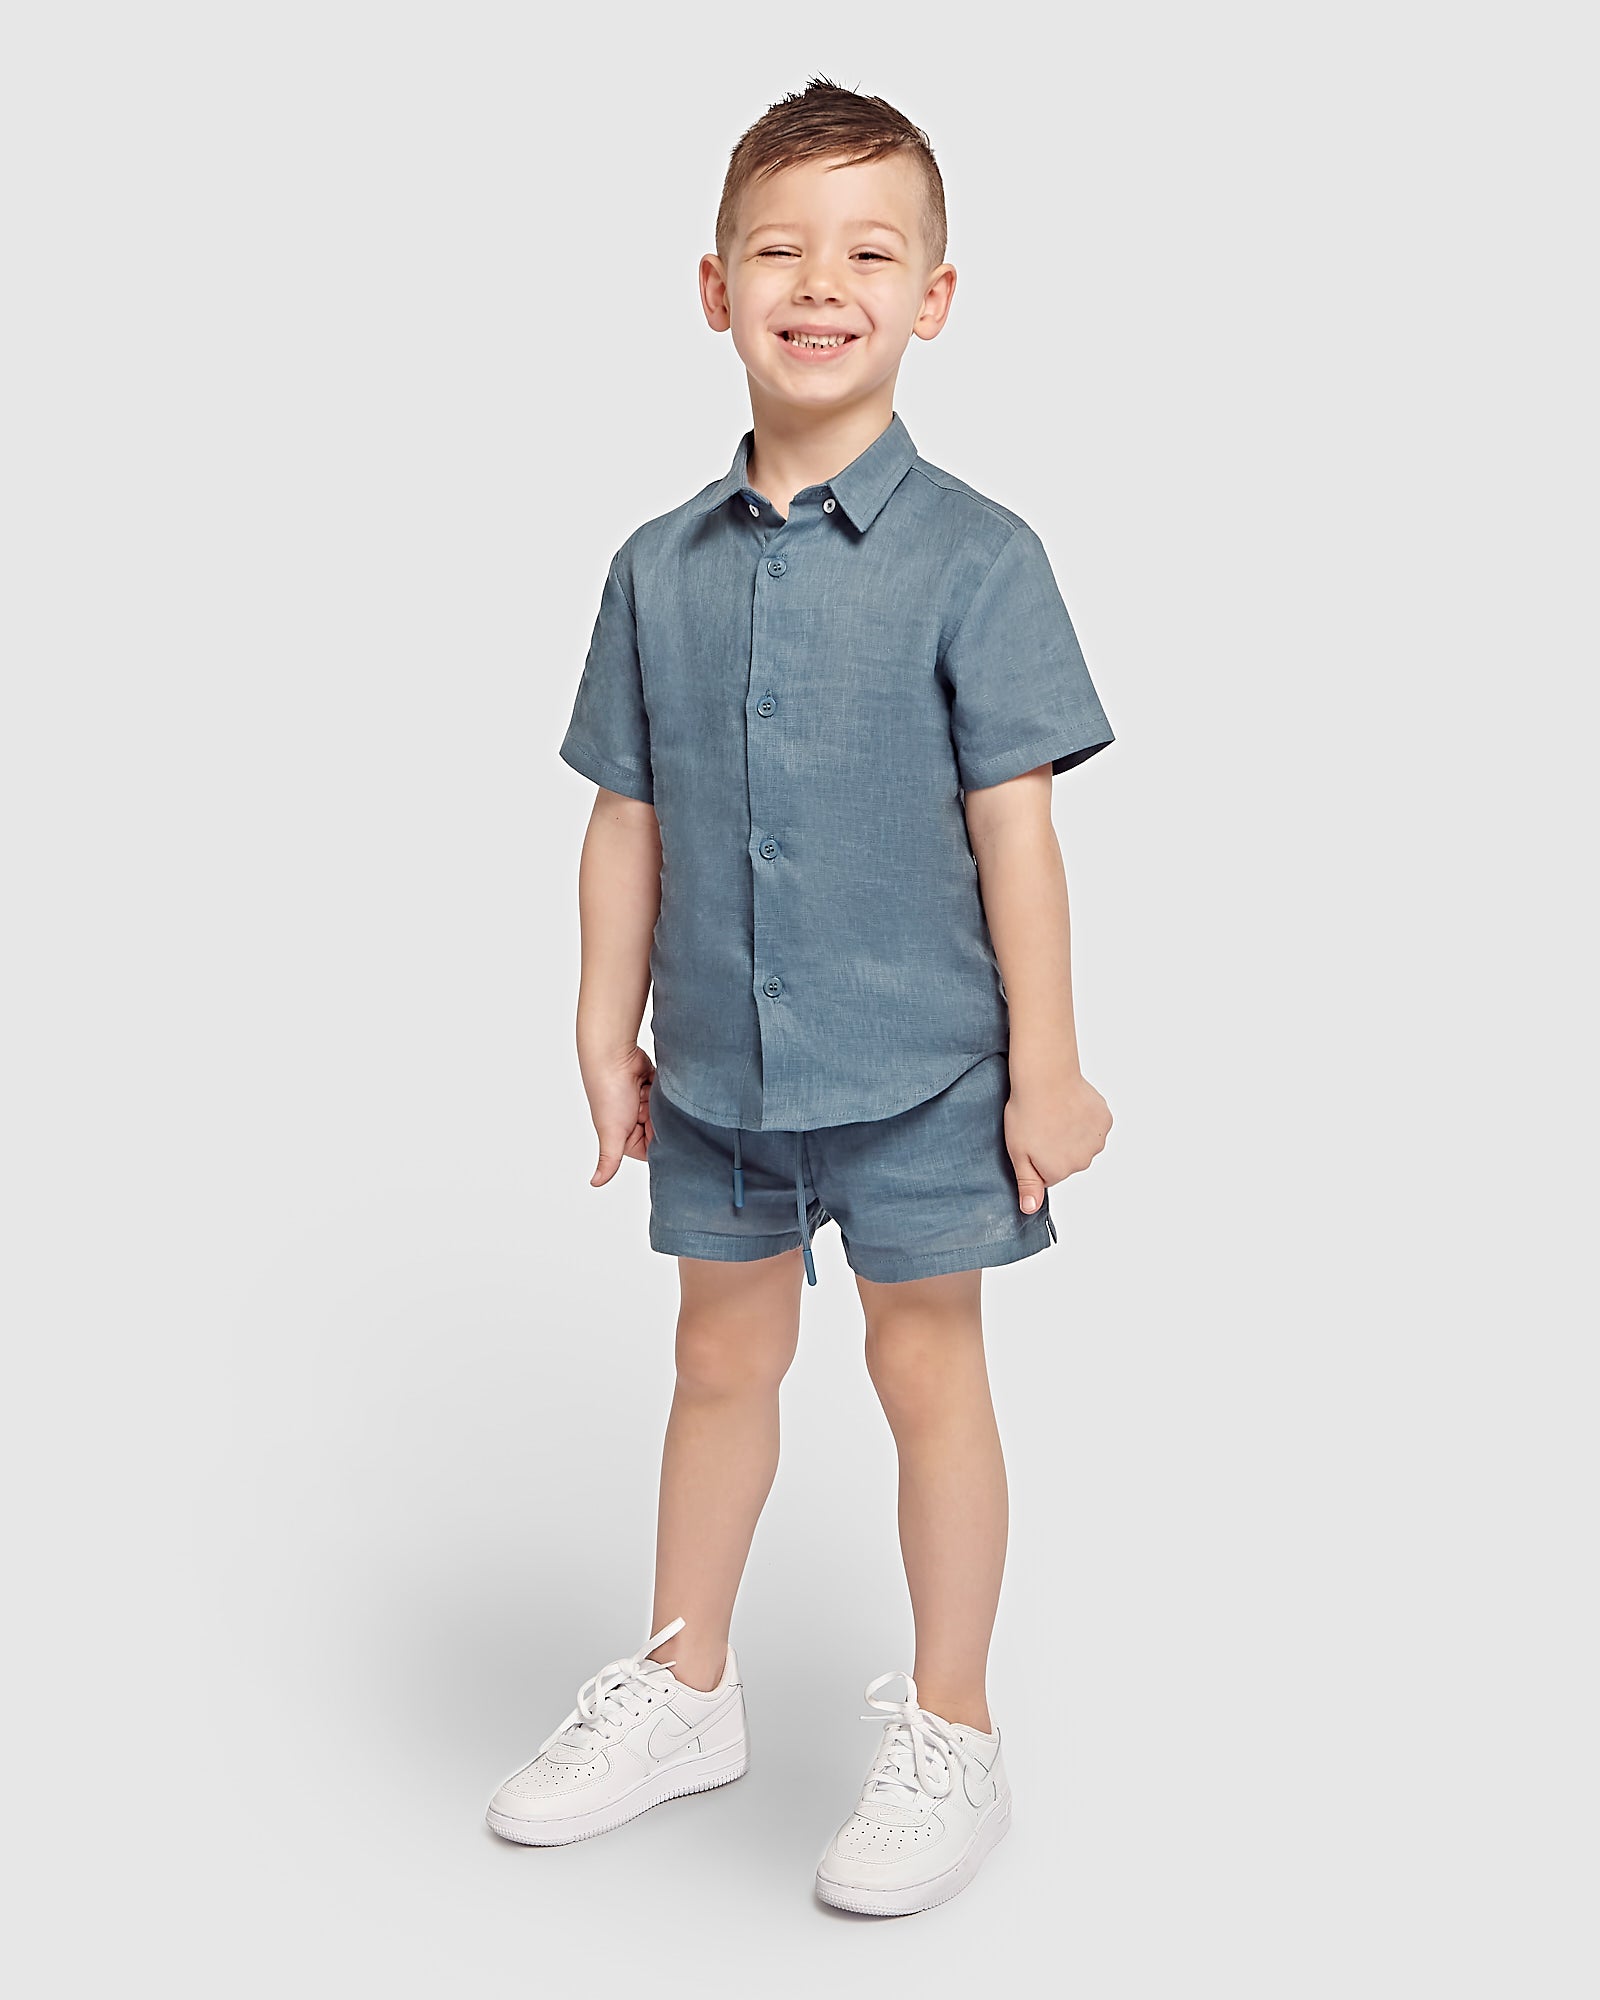 Kids Linen Shirt & Short Two Piece Set